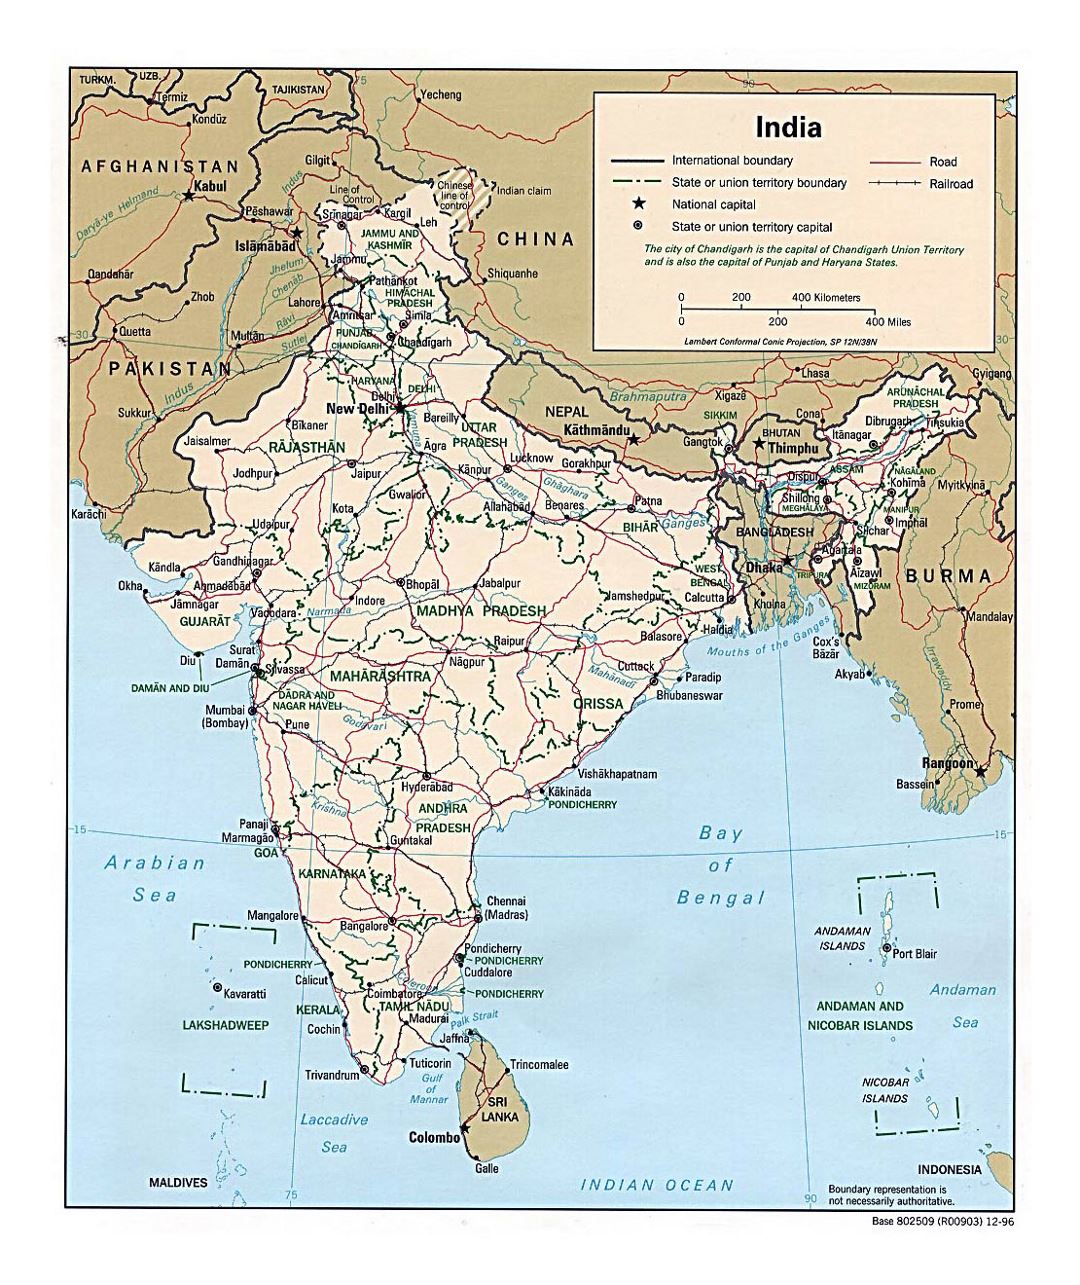 Detallado mapa político y administrativo de la India con carreteras, ferrocarriles y ciudades - 1996